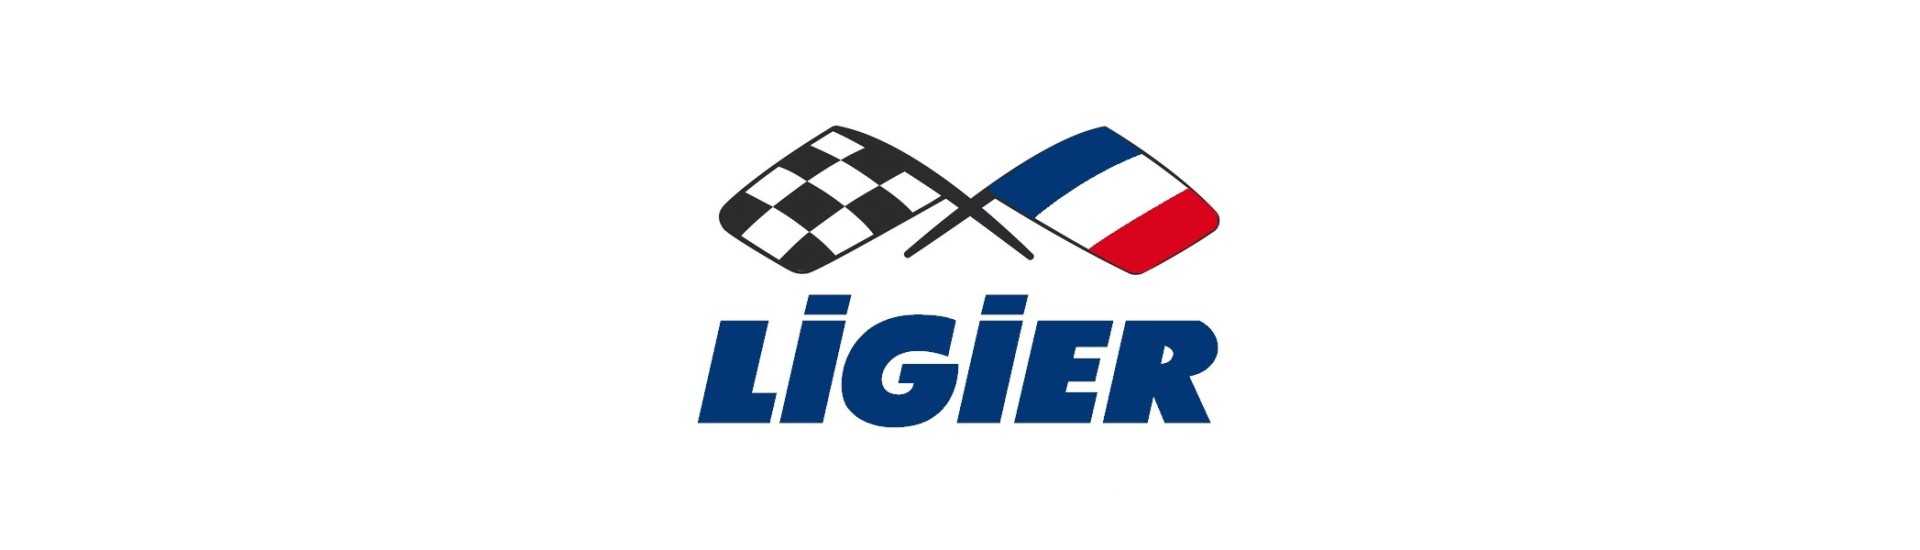 Deflettore d'aria al miglior prezzo per auto senza patente Ligier